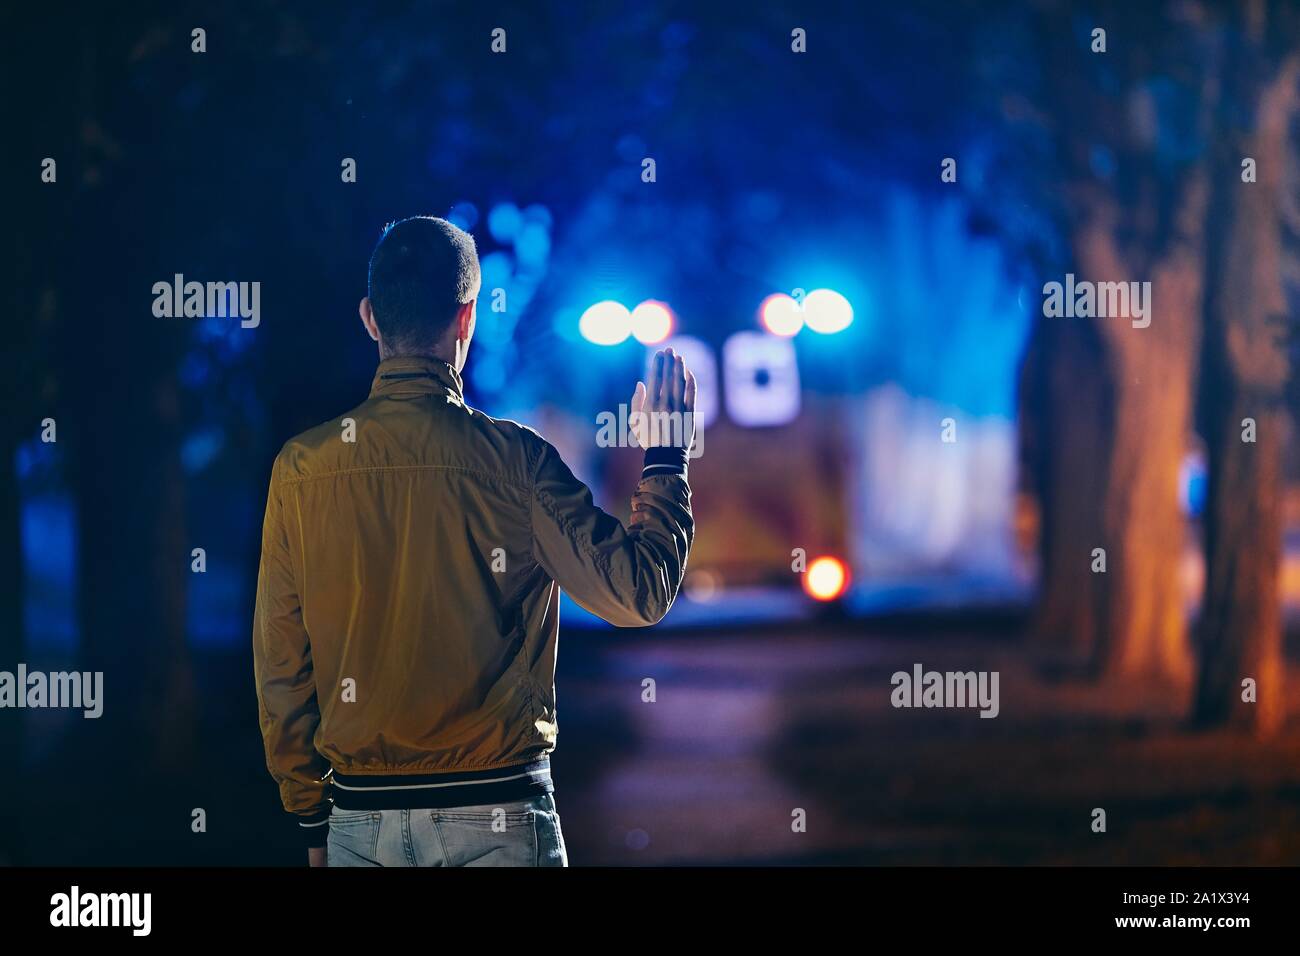 Giovane uomo guardando lasciando ambulanza del servizio di emergenza medica. Concetti di cura di salute, salvataggio e addio. Foto Stock